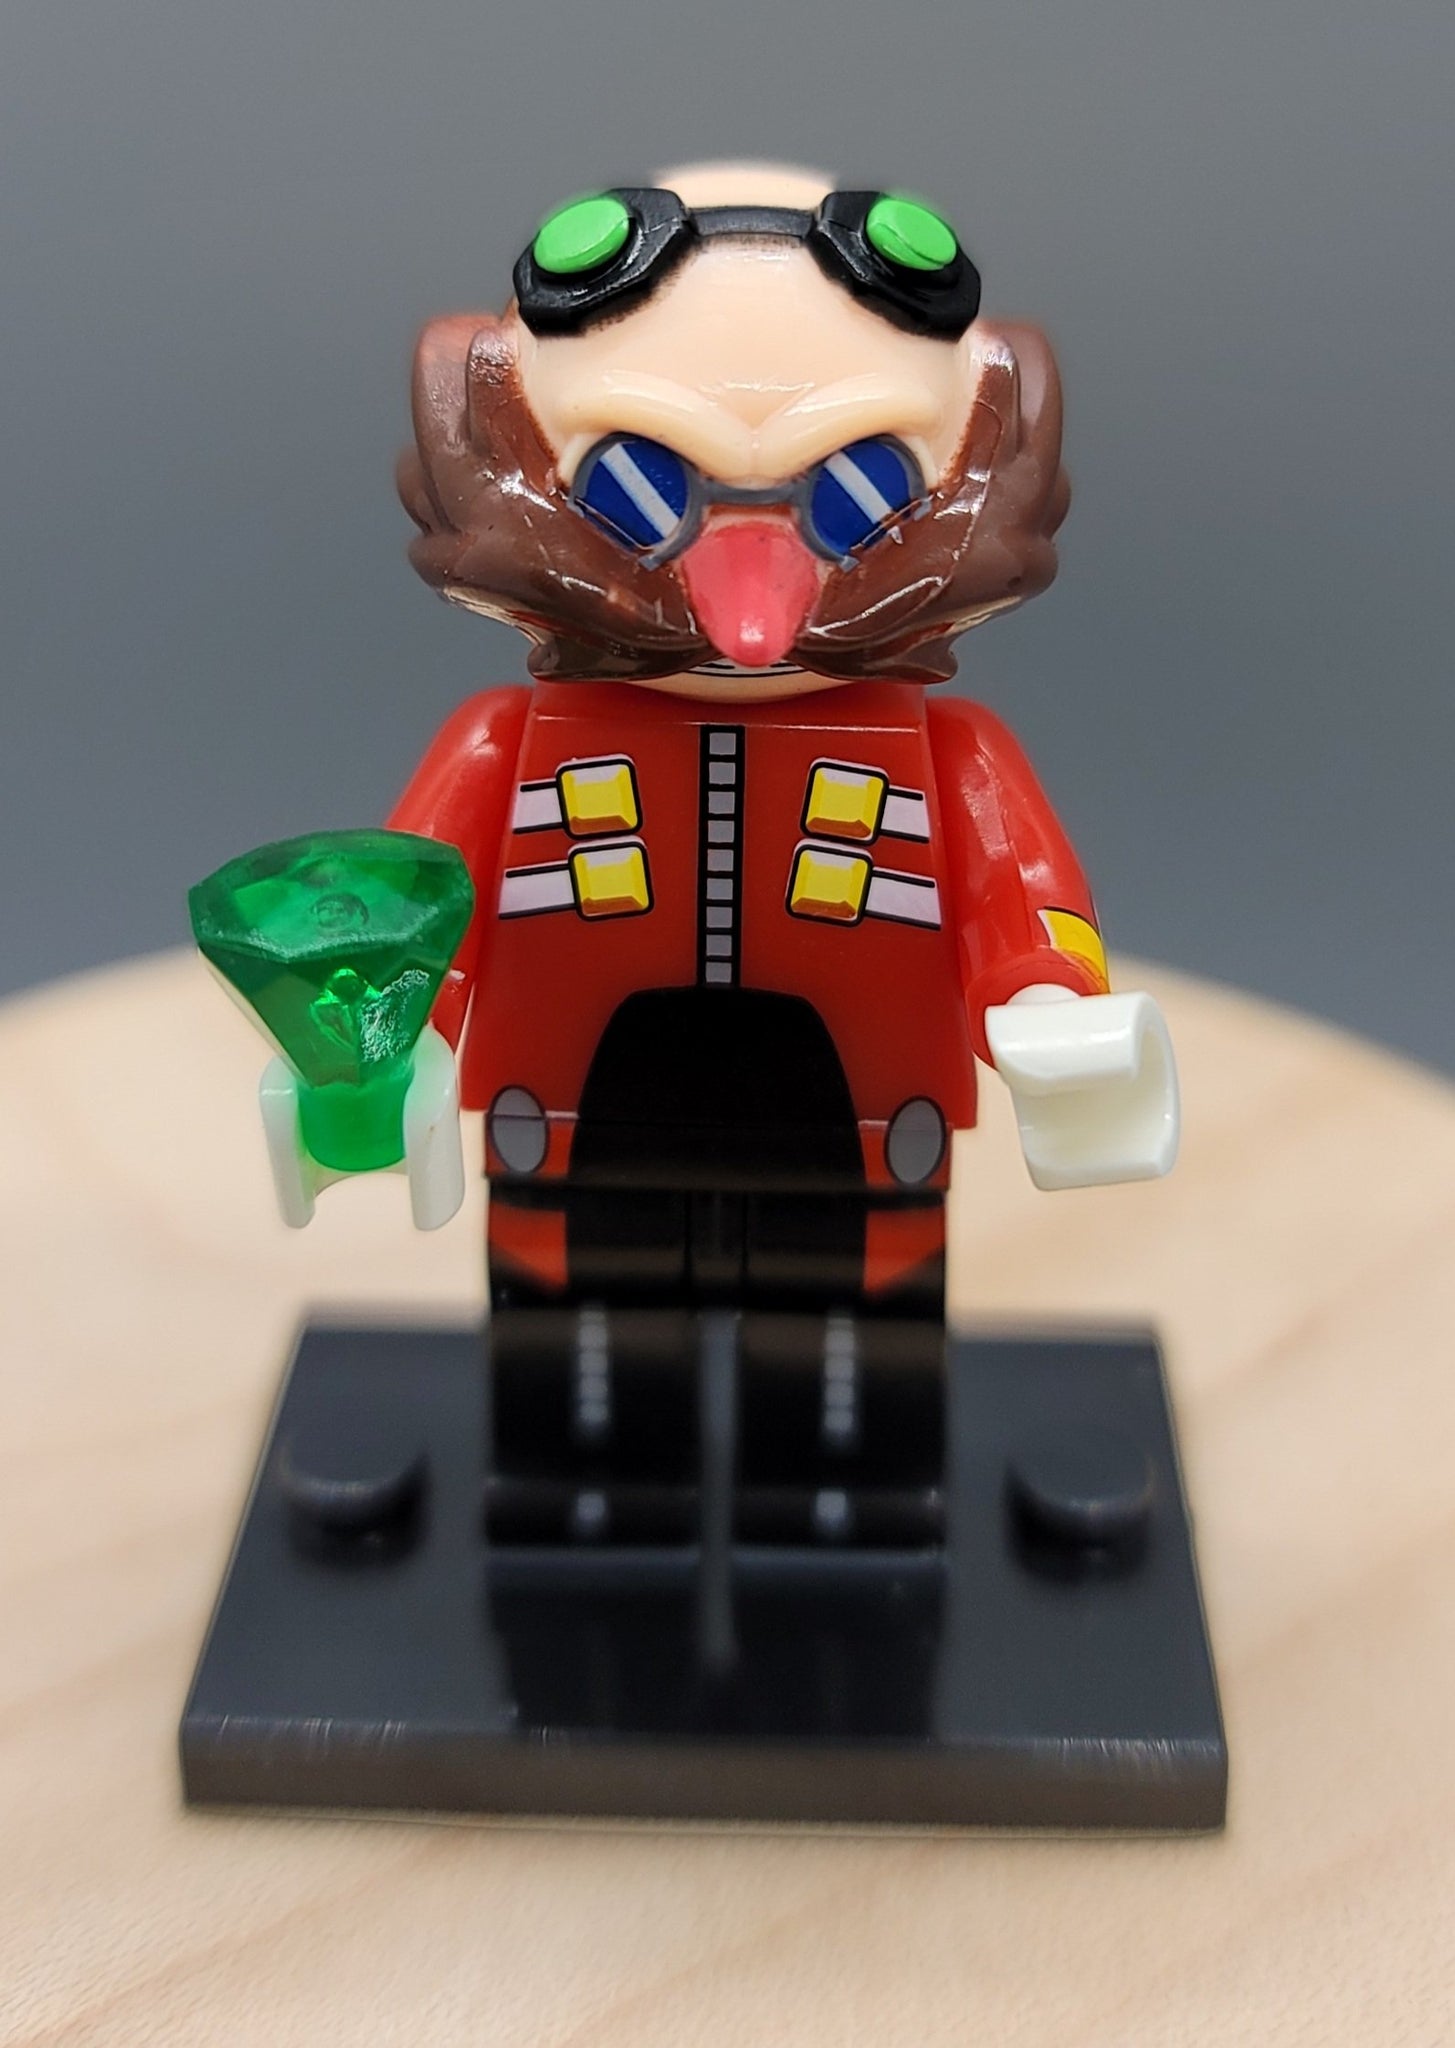 Dr. Eggman Custom minifigure by Beaus Bricks.   Brand new in package.  Please visit shop, lots more! - BeausBricks